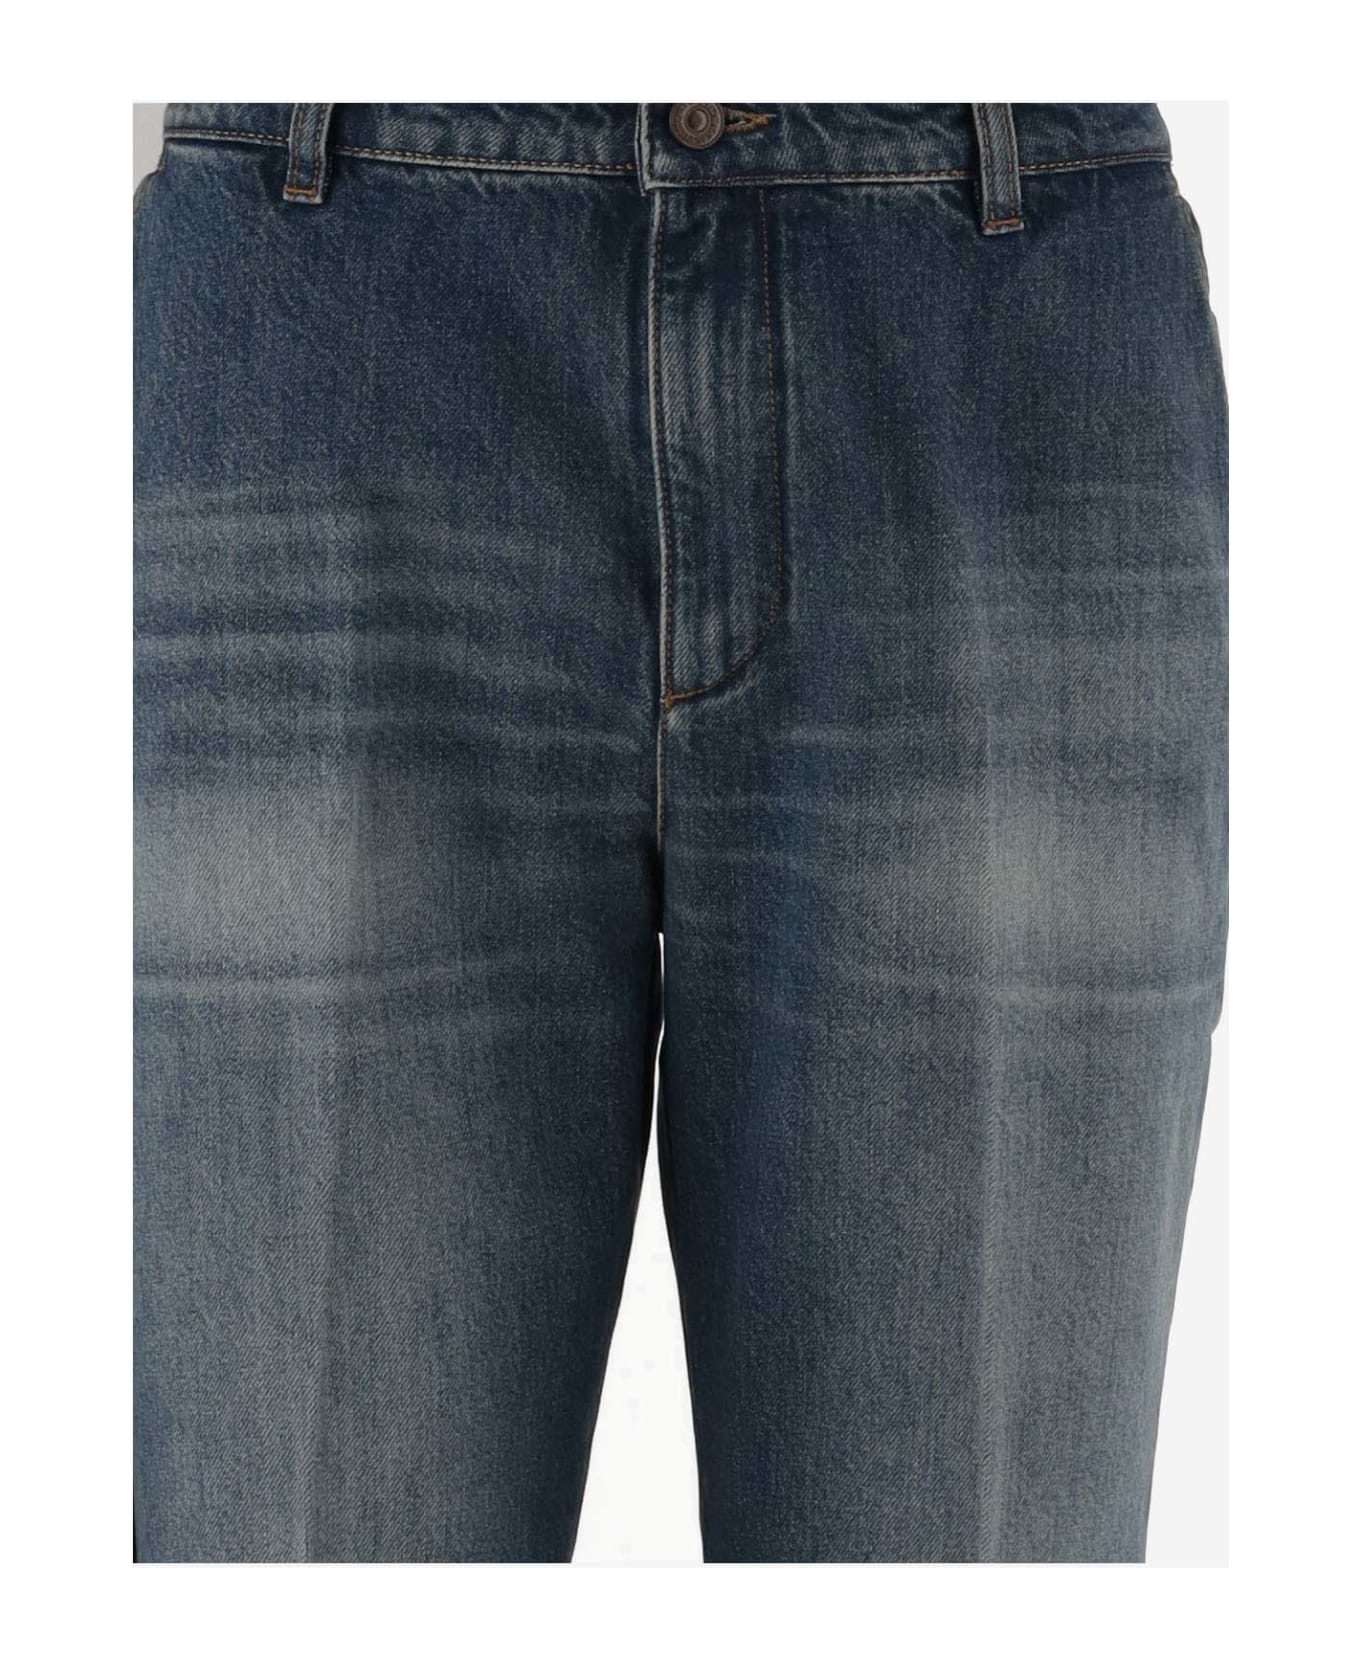 Victoria Beckham Cotton Denim Jeans - Denim デニム